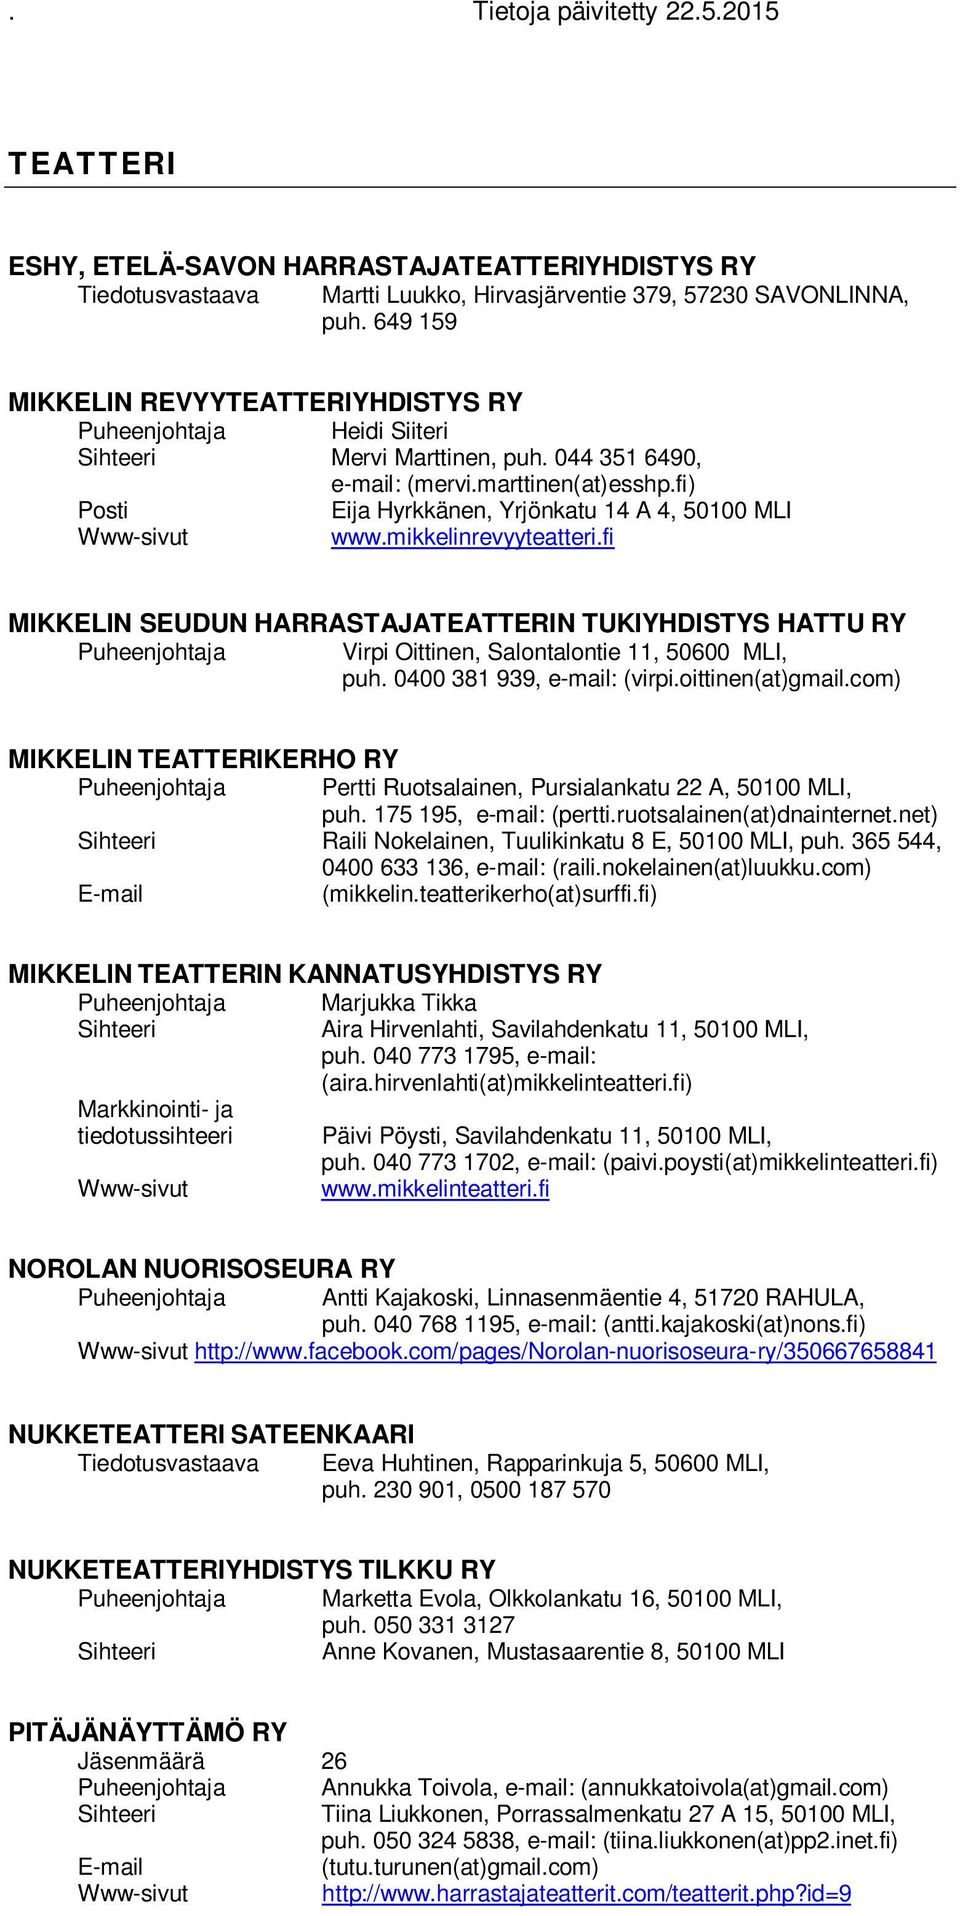 fi MIKKELIN SEUDUN HARRASTAJATEATTERIN TUKIYHDISTYS HATTU RY Virpi Oittinen, Salontalontie 11, 50600 MLI, puh. 0400 381 939, e-mail: (virpi.oittinen(at)gmail.